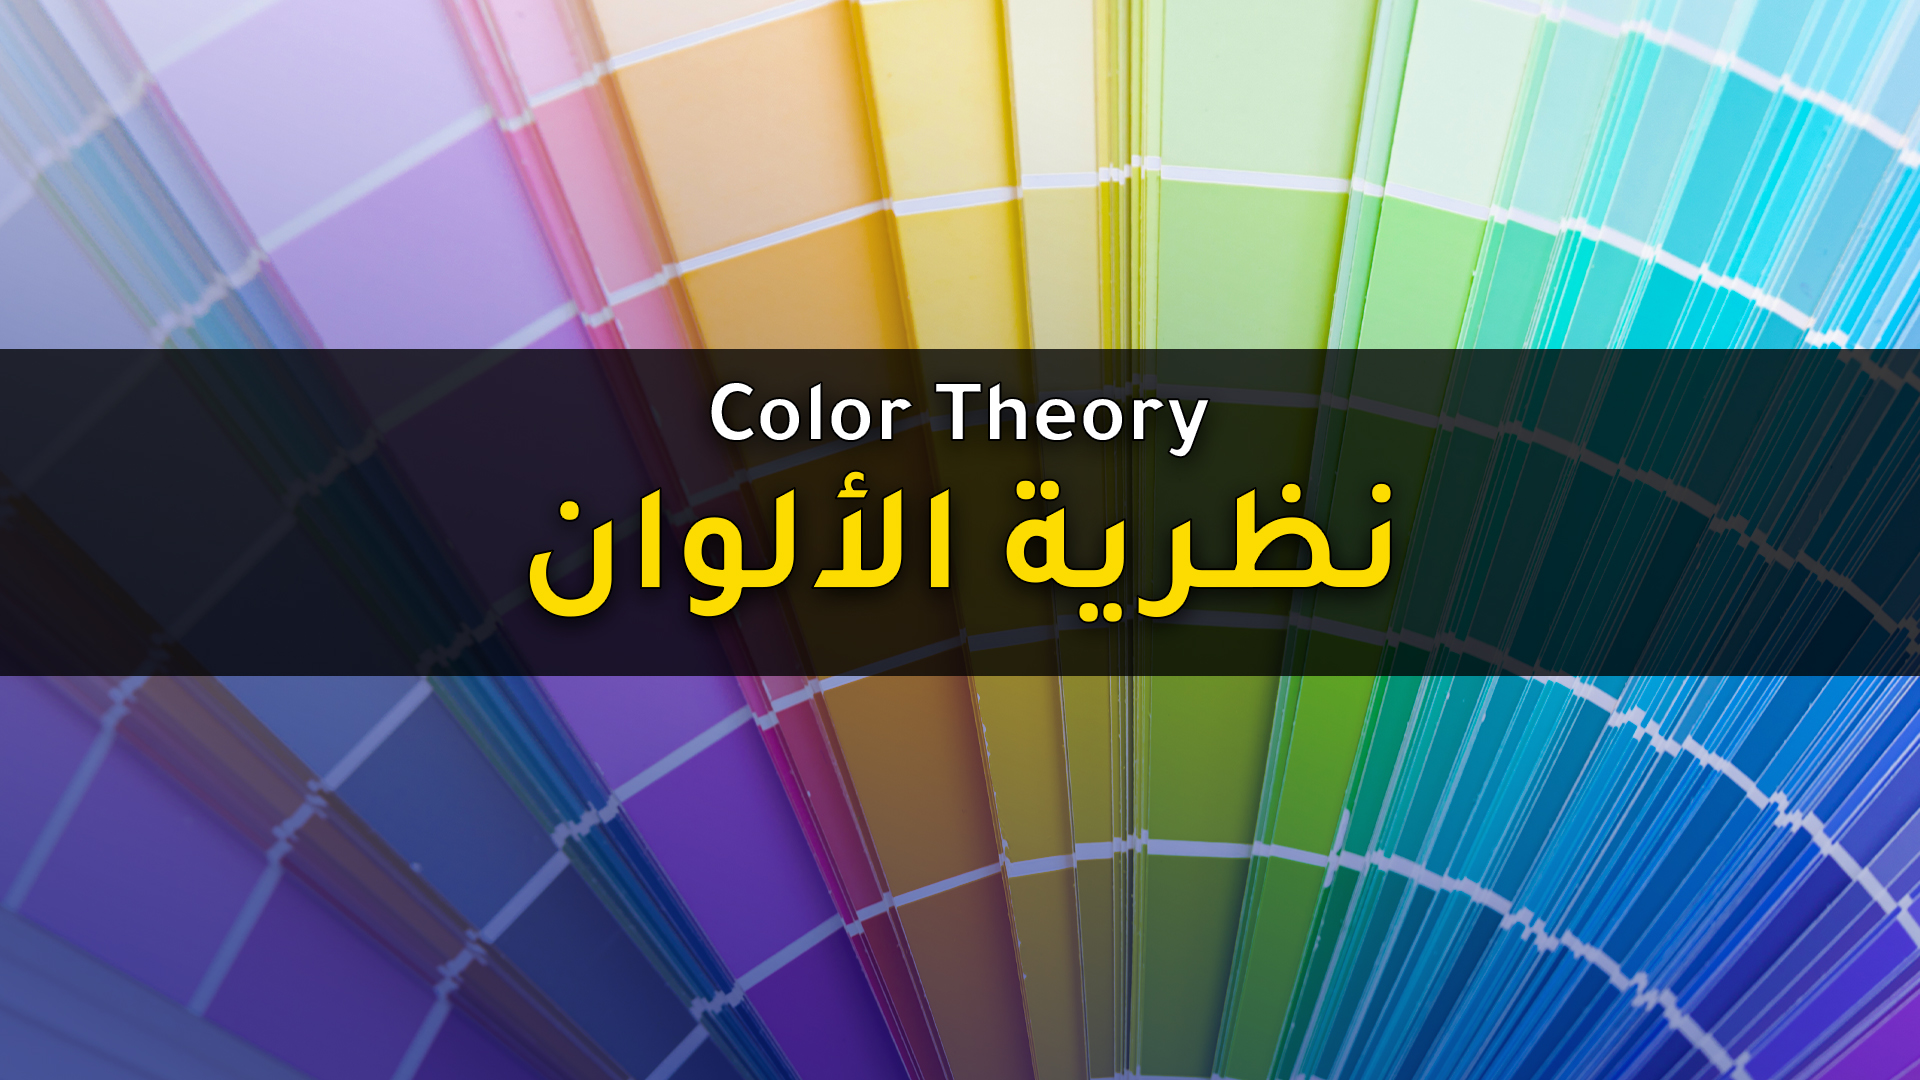 You are currently viewing أساسيات نظرية الألوان للمصممين وأنظمة الألوان